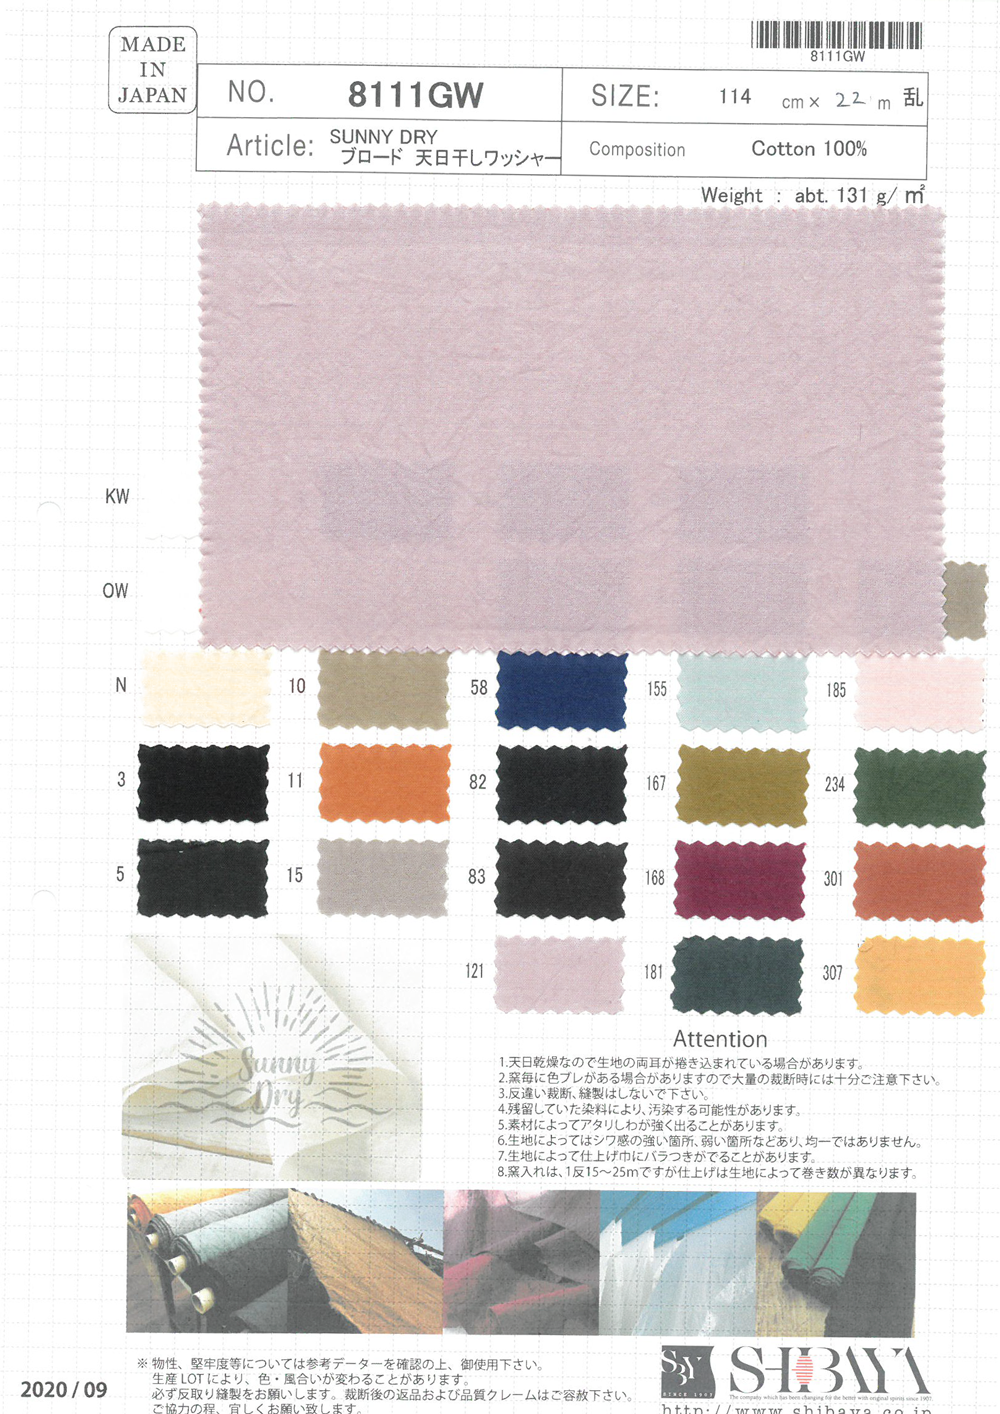 8111GW SUNNY DRY Drap Fin Traitement à La Laveuse Séchée Au Soleil[Fabrication De Textile] SHIBAYA